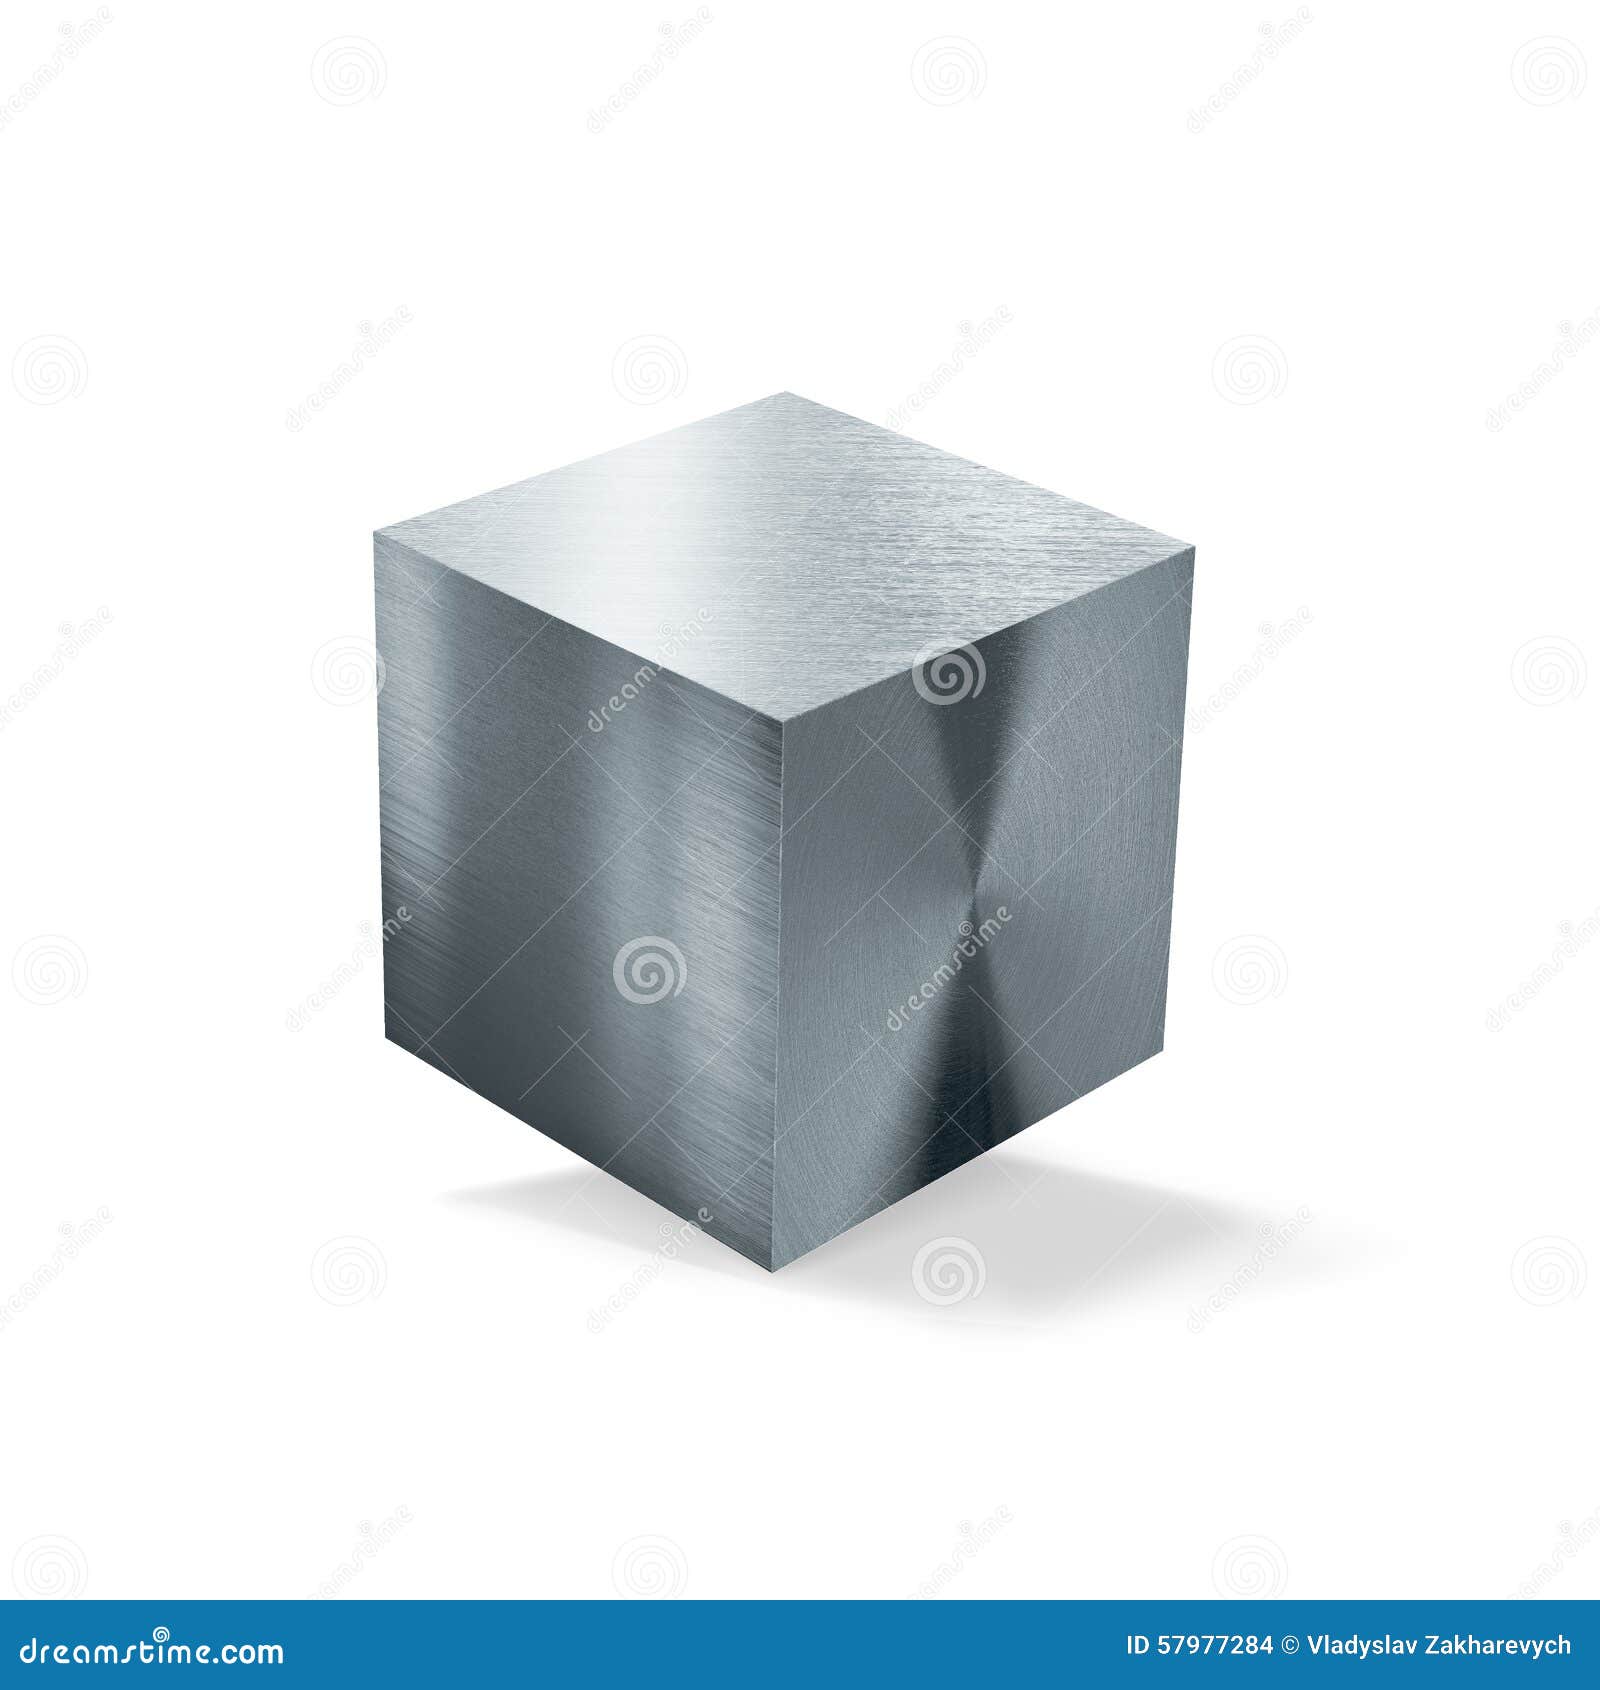 metal cube